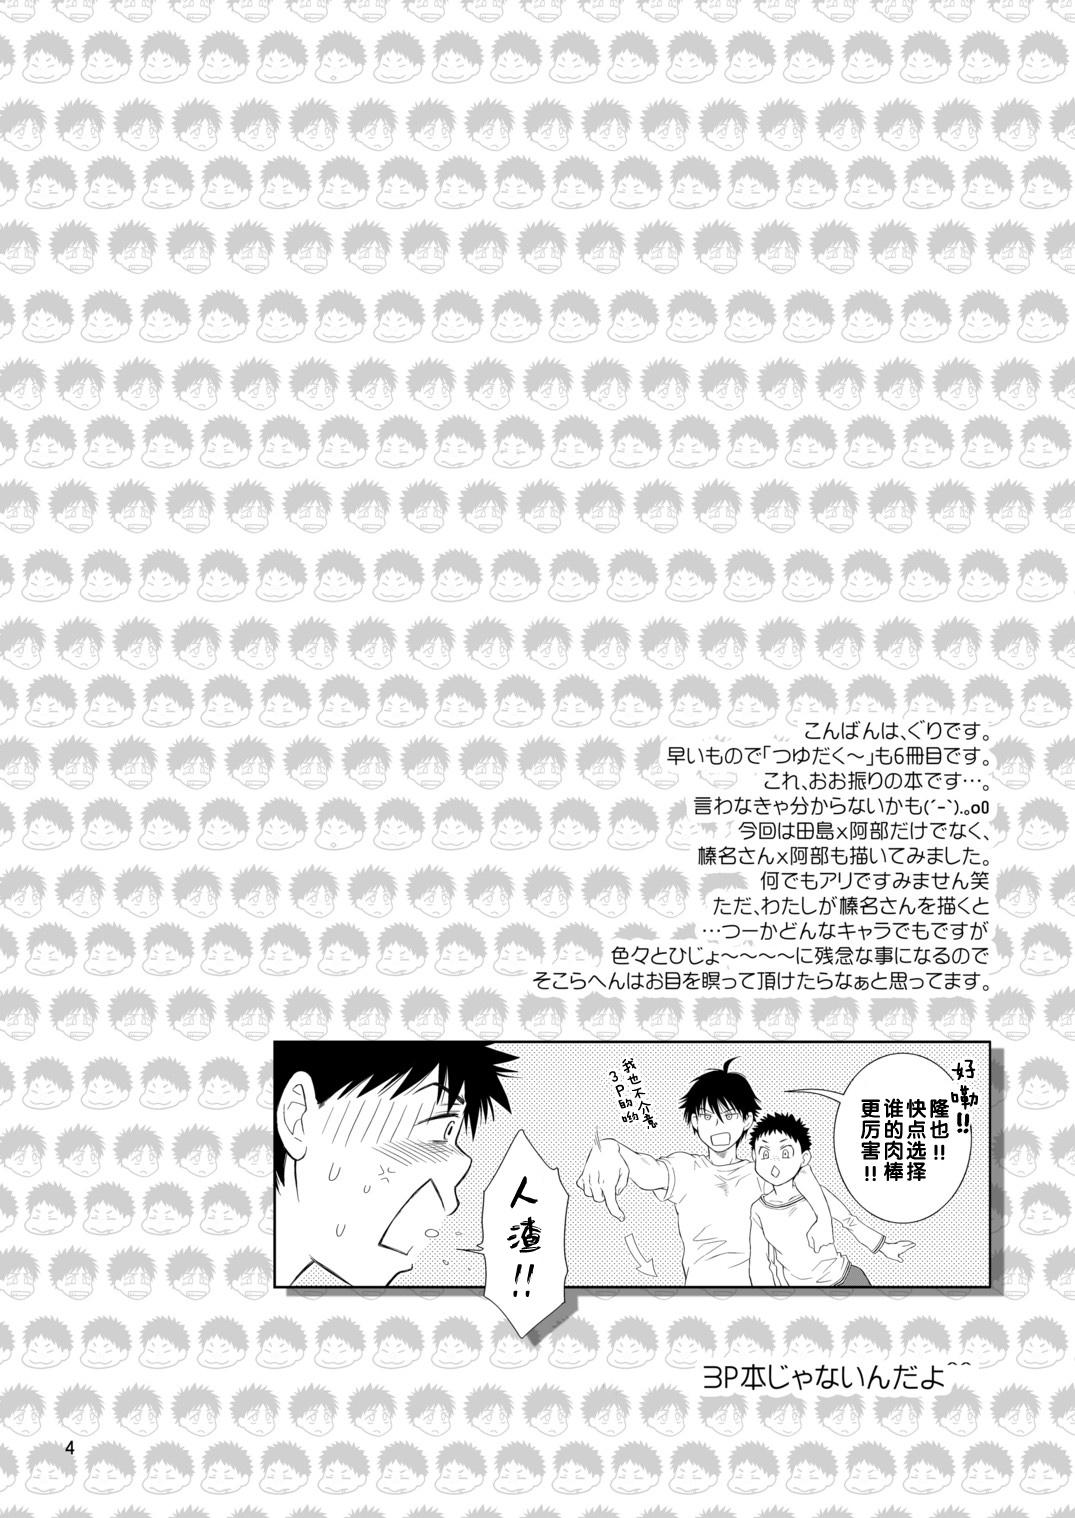 Exhib Tsuyudaku Fight! 6 - Ookiku furikabutte | big windup Mom - Page 4